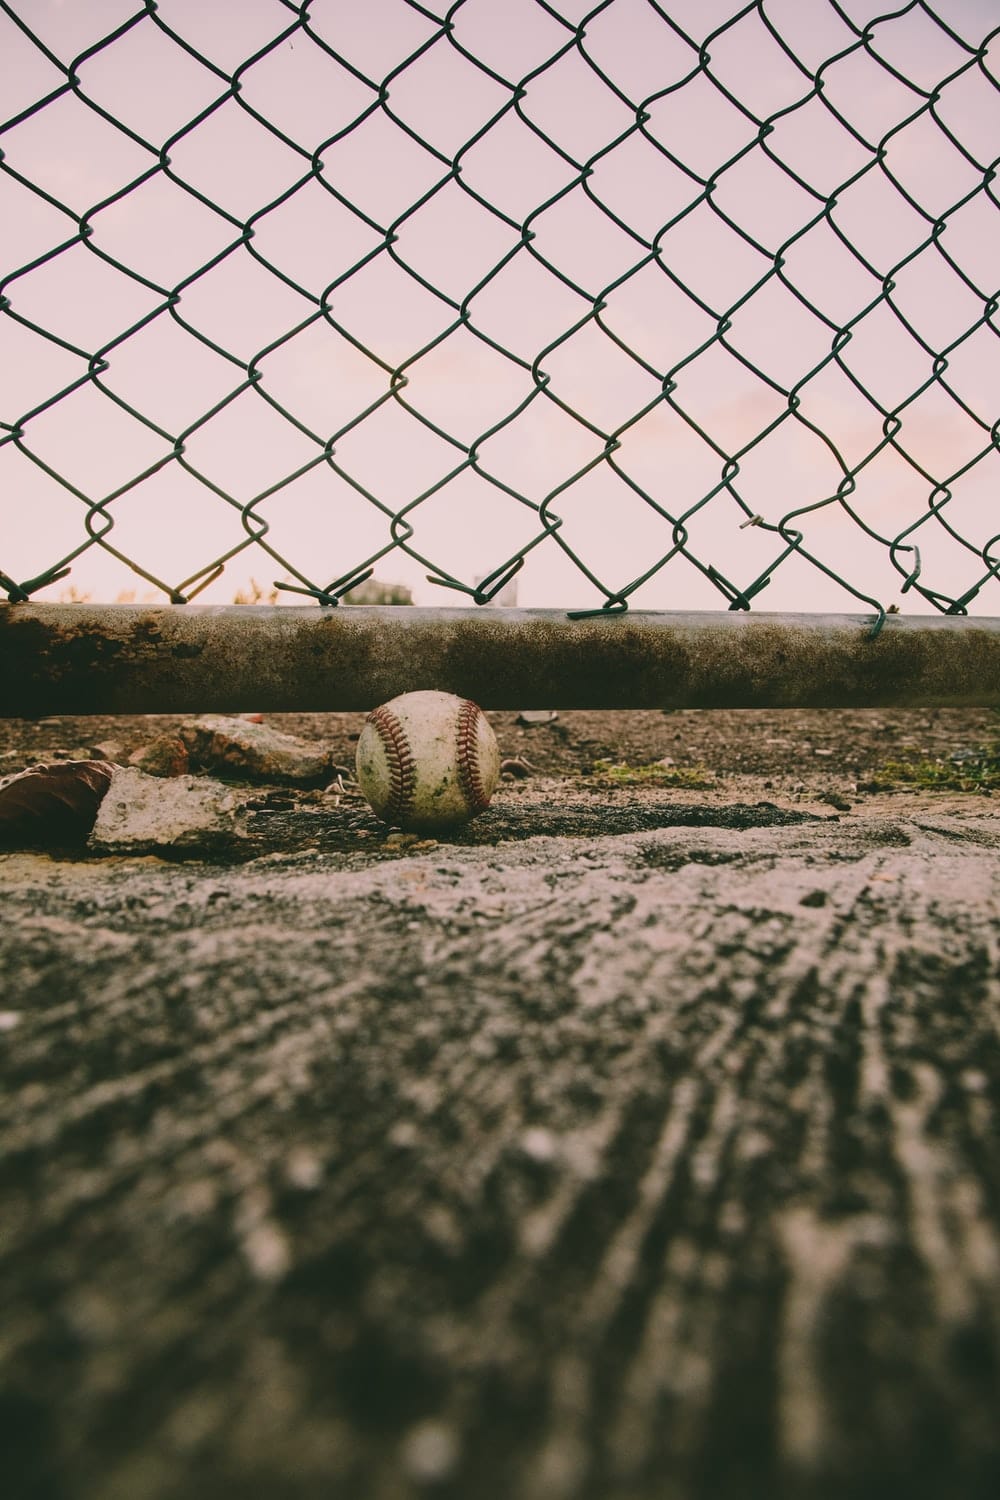 Cross Stitch | Armadillo - Grayscale Photo Of Baseball On Field - Cross Stitched